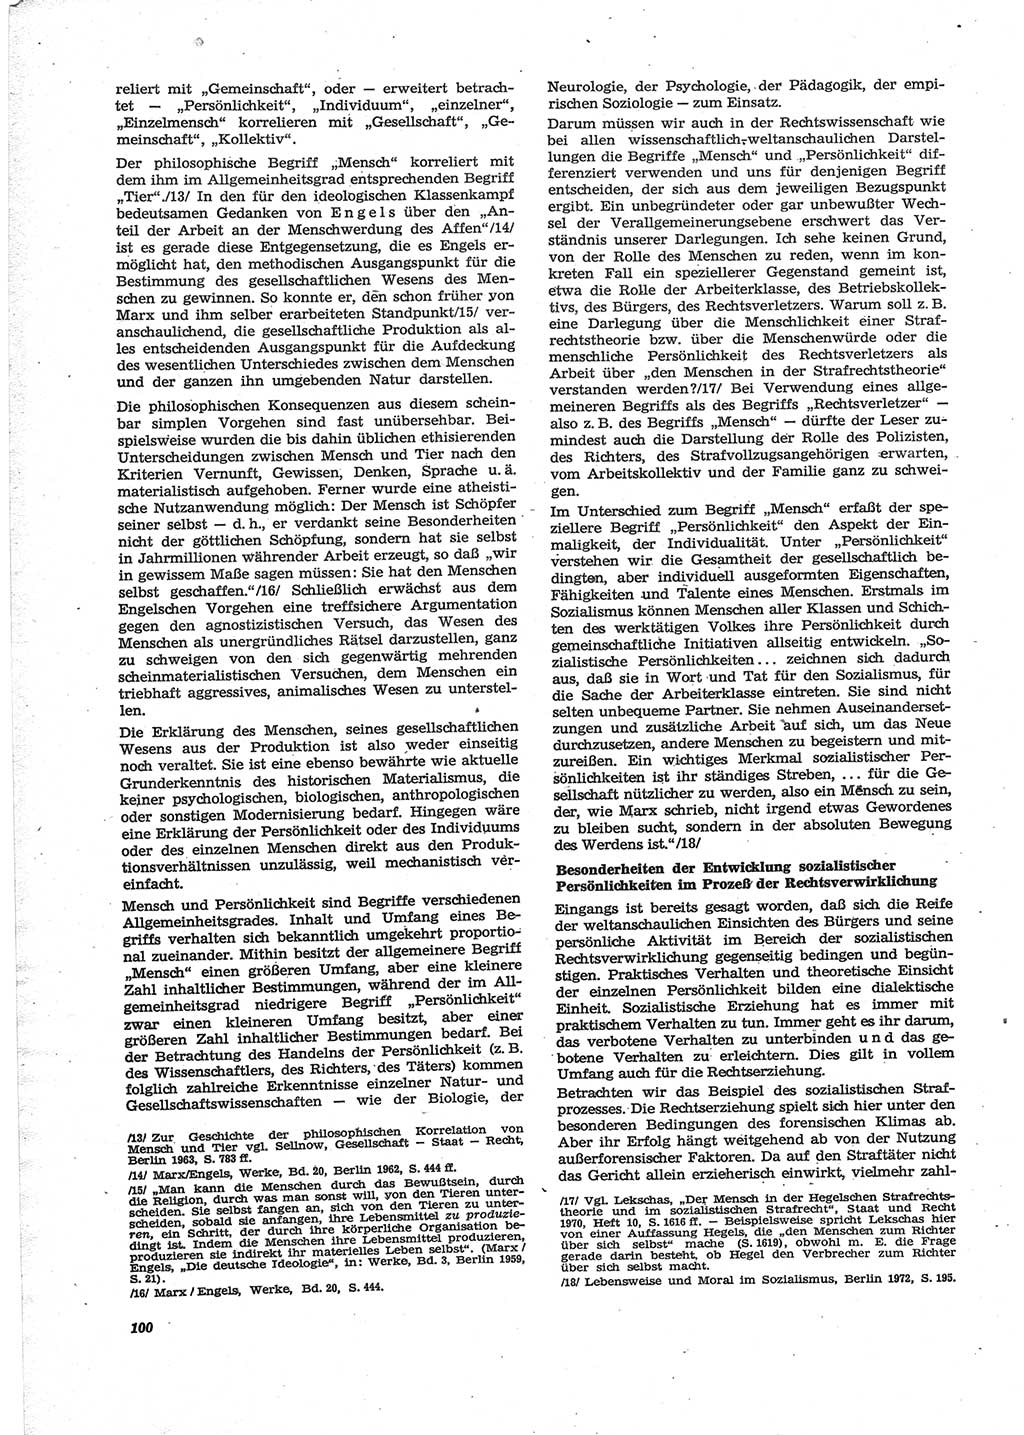 Neue Justiz (NJ), Zeitschrift für Recht und Rechtswissenschaft [Deutsche Demokratische Republik (DDR)], 28. Jahrgang 1974, Seite 100 (NJ DDR 1974, S. 100)